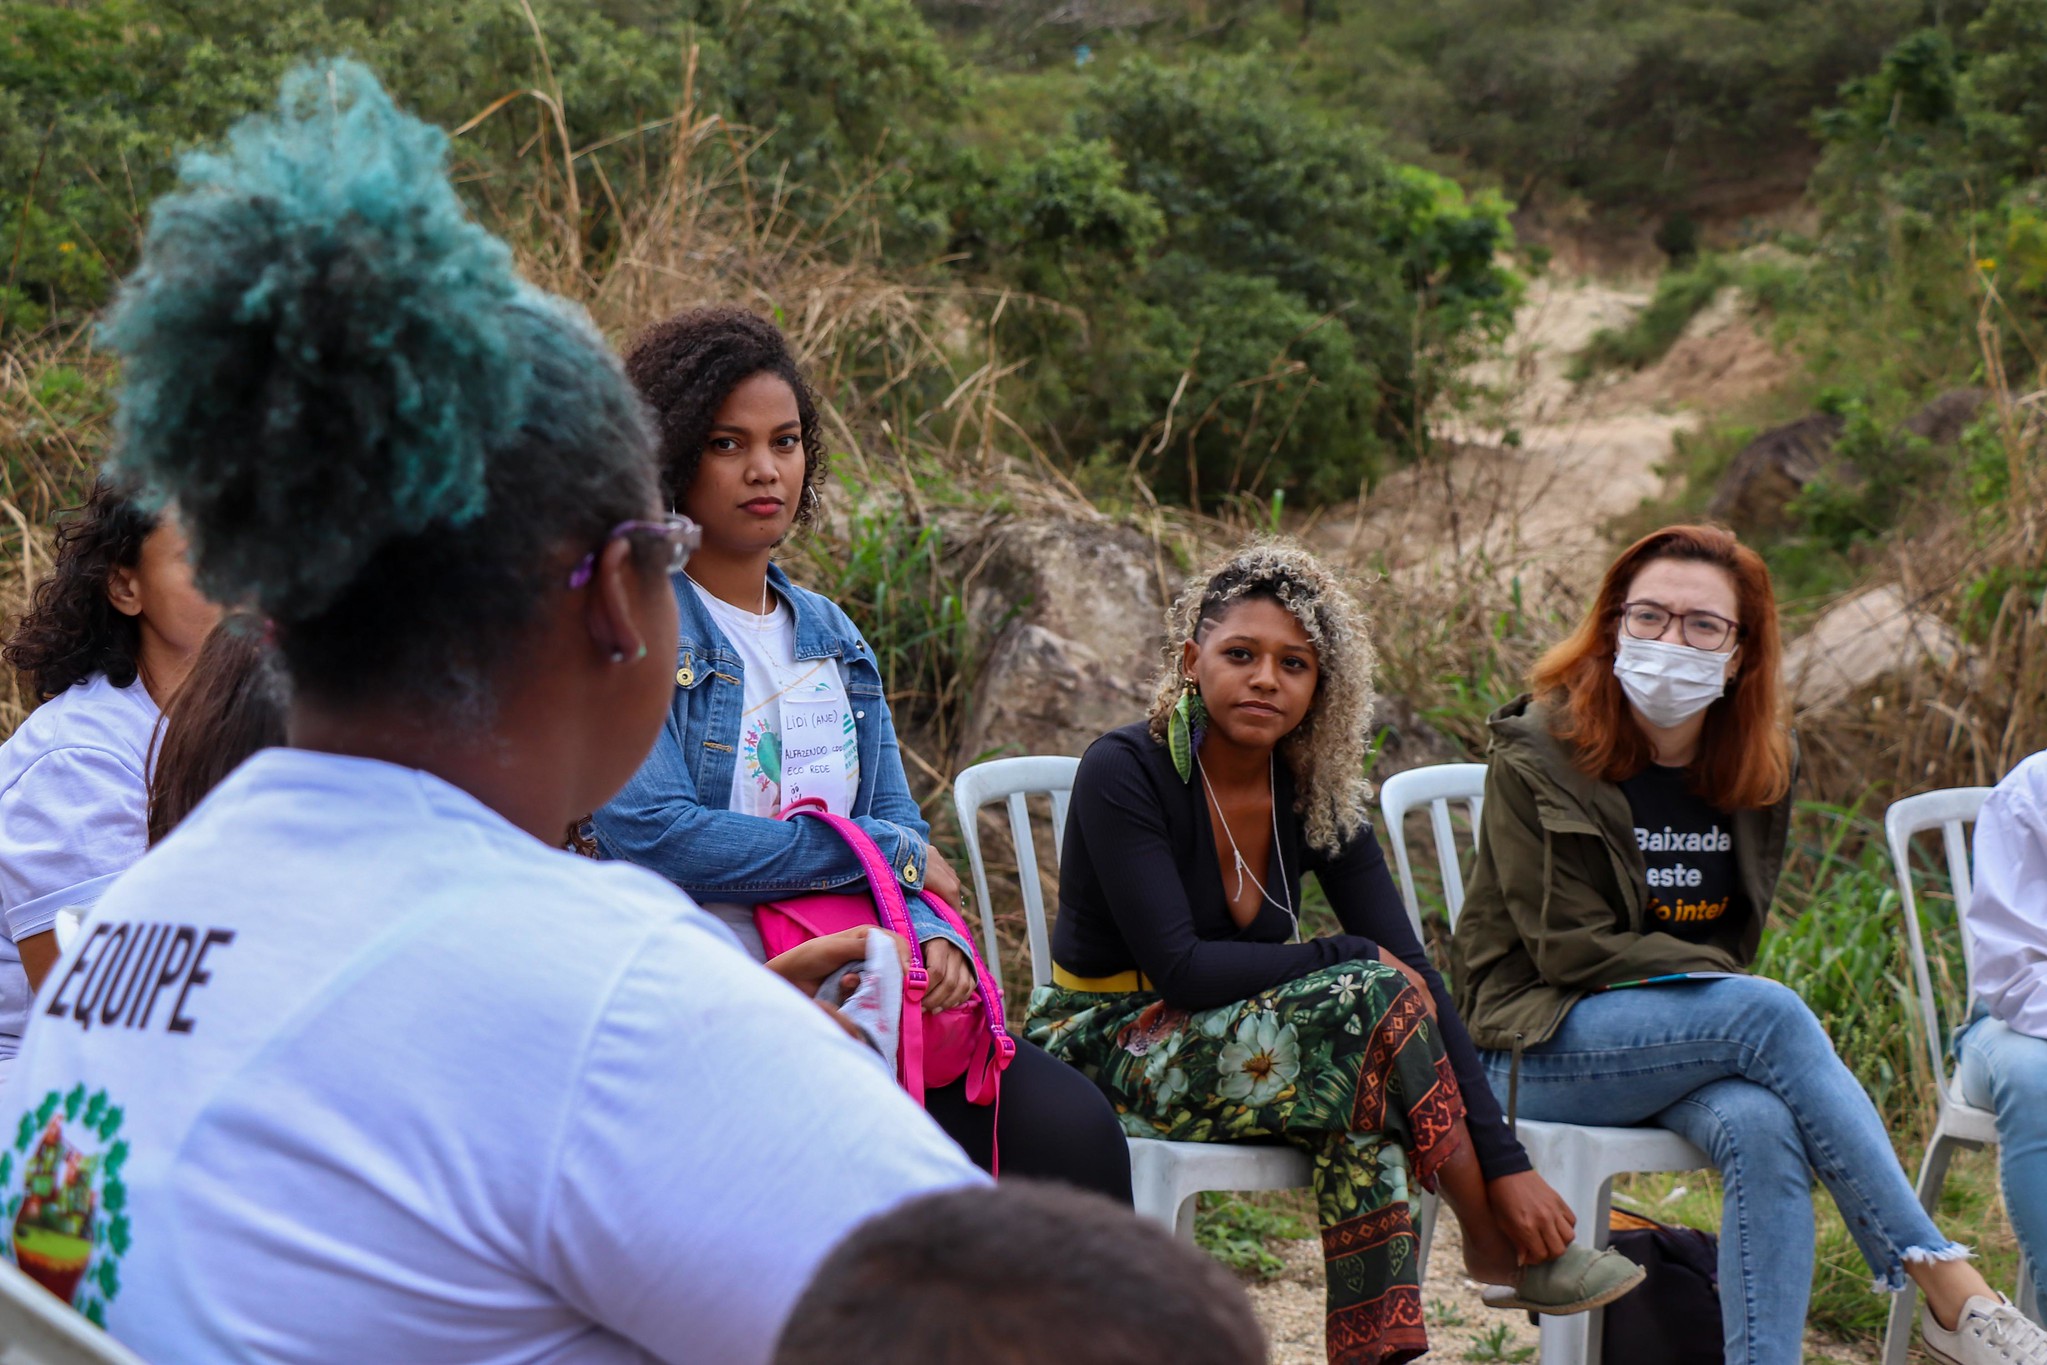 Gisele Moura e demais participantes da roda de discussão de racismo ambiental. Foto: Alexandre Cerqueira